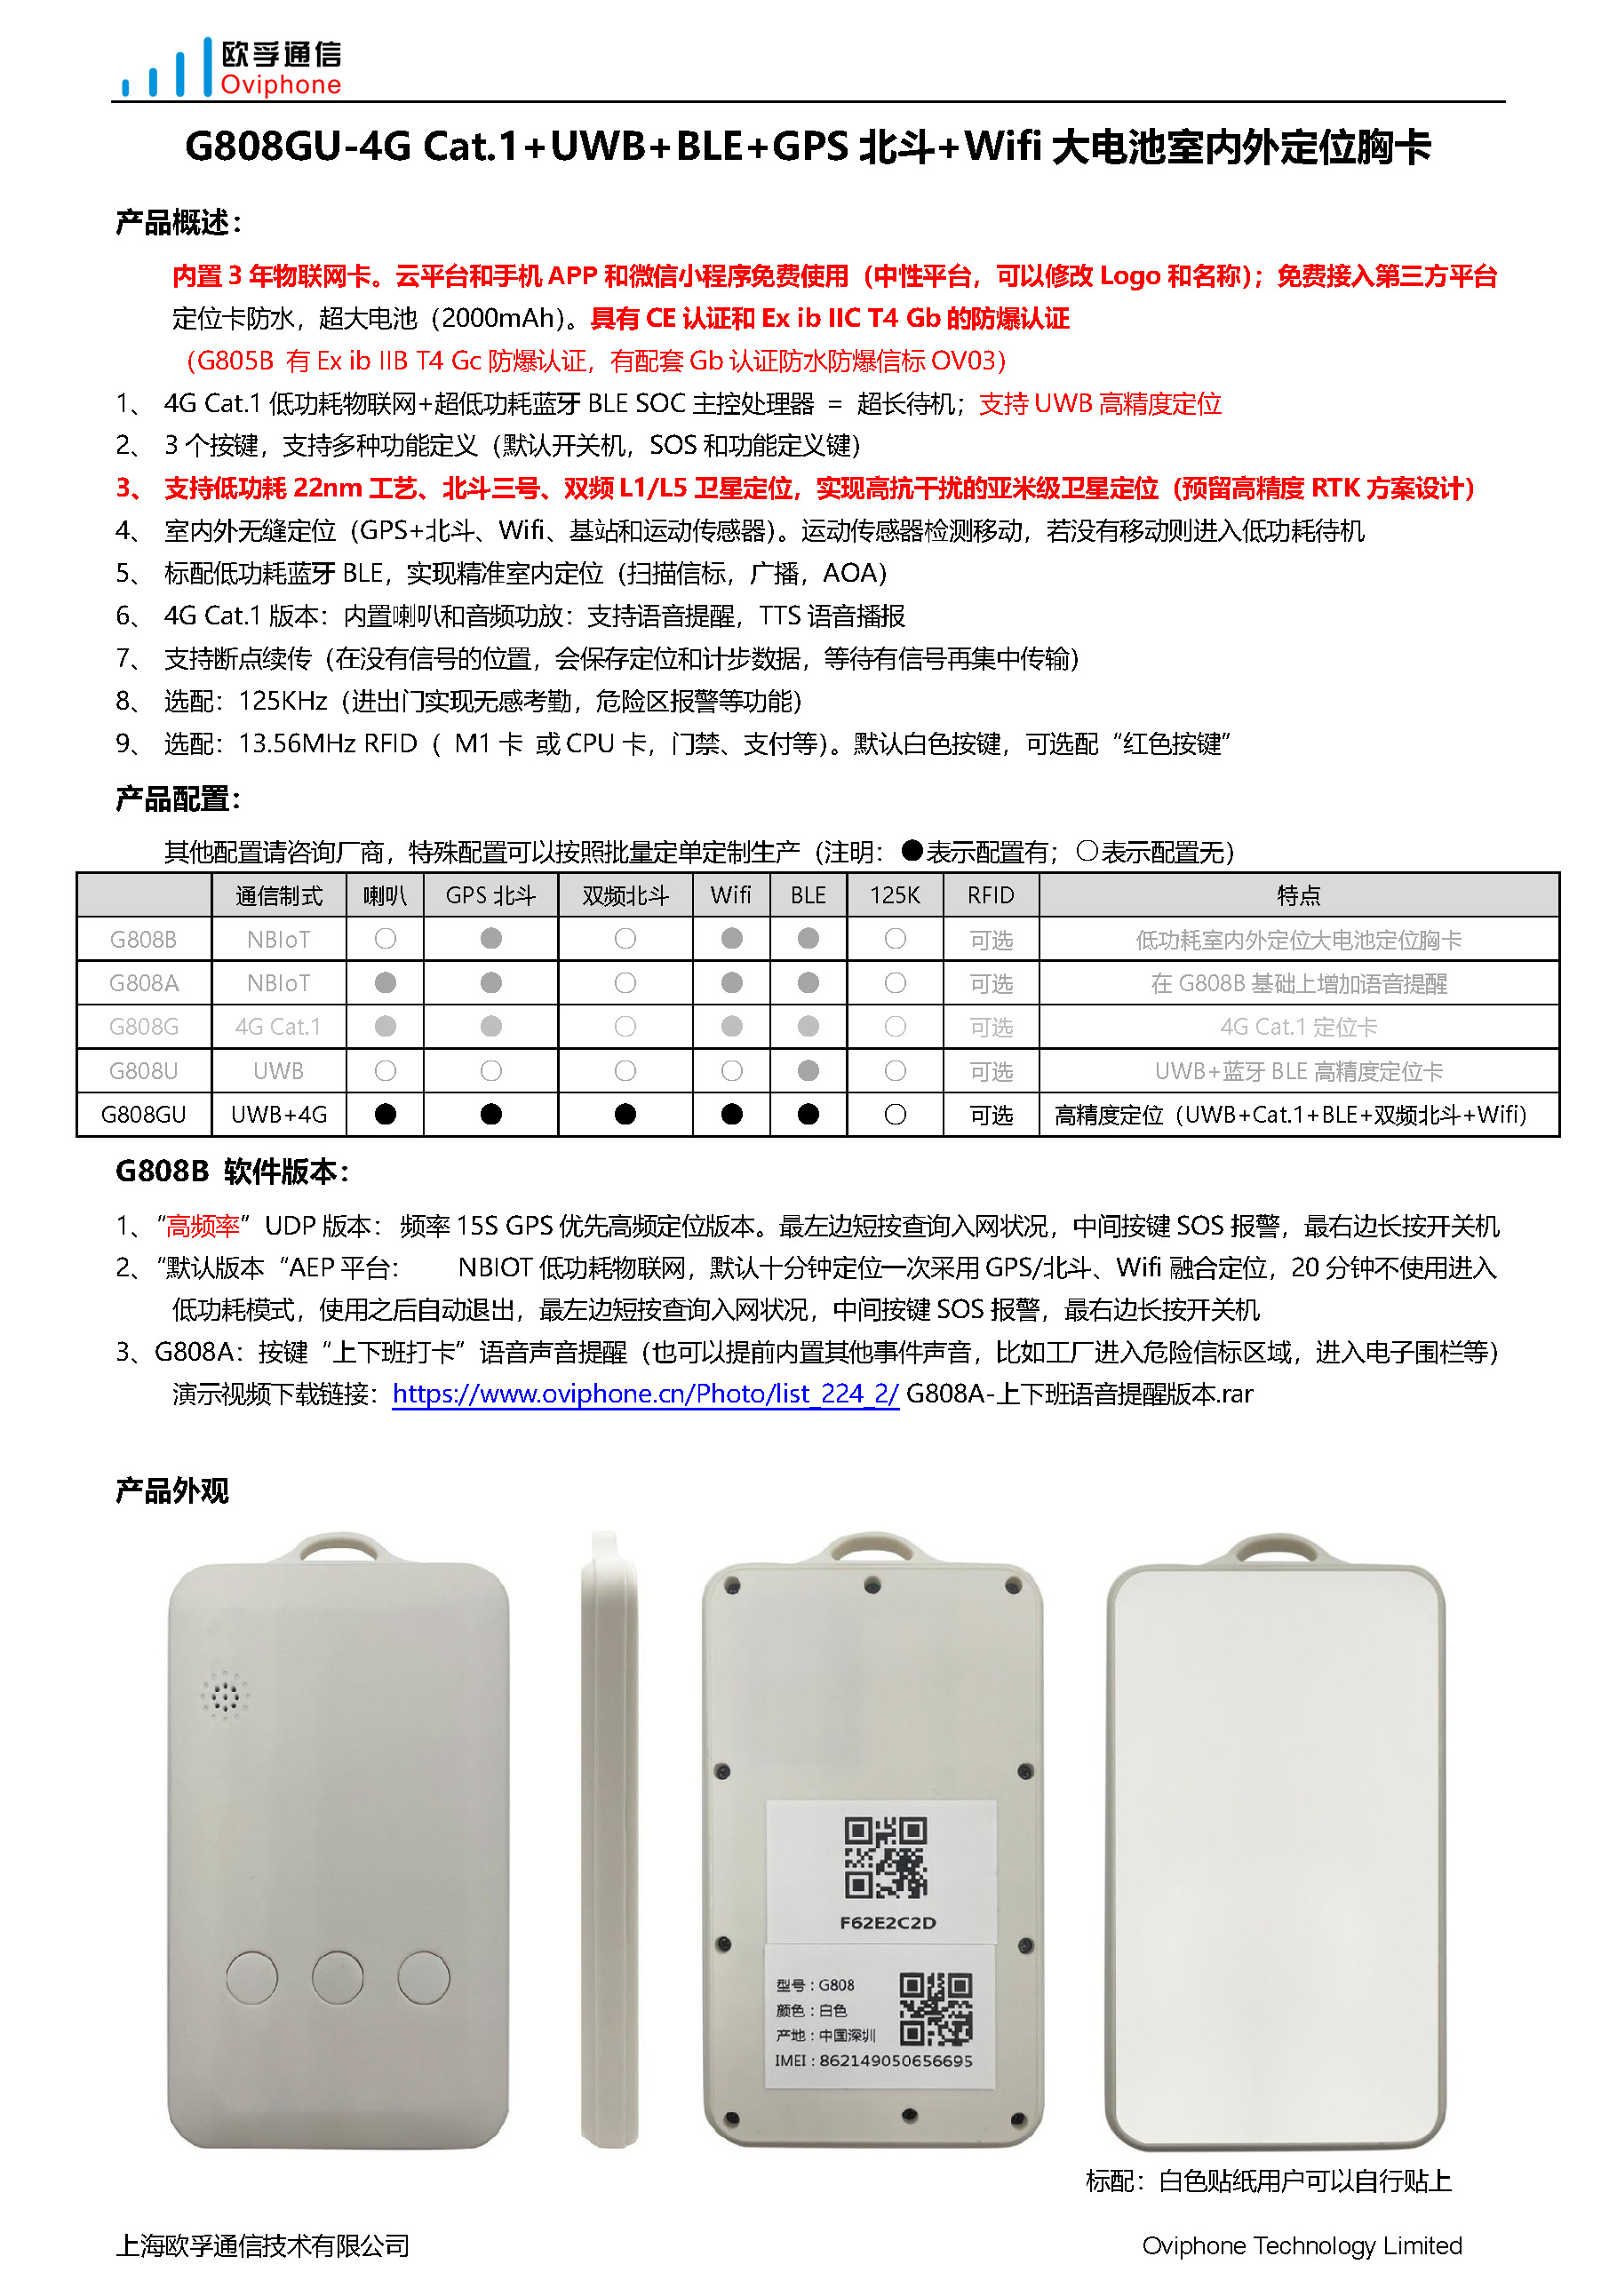 G808GU-4G Cat.1+UWB+BLE+GPS北斗+WiFi